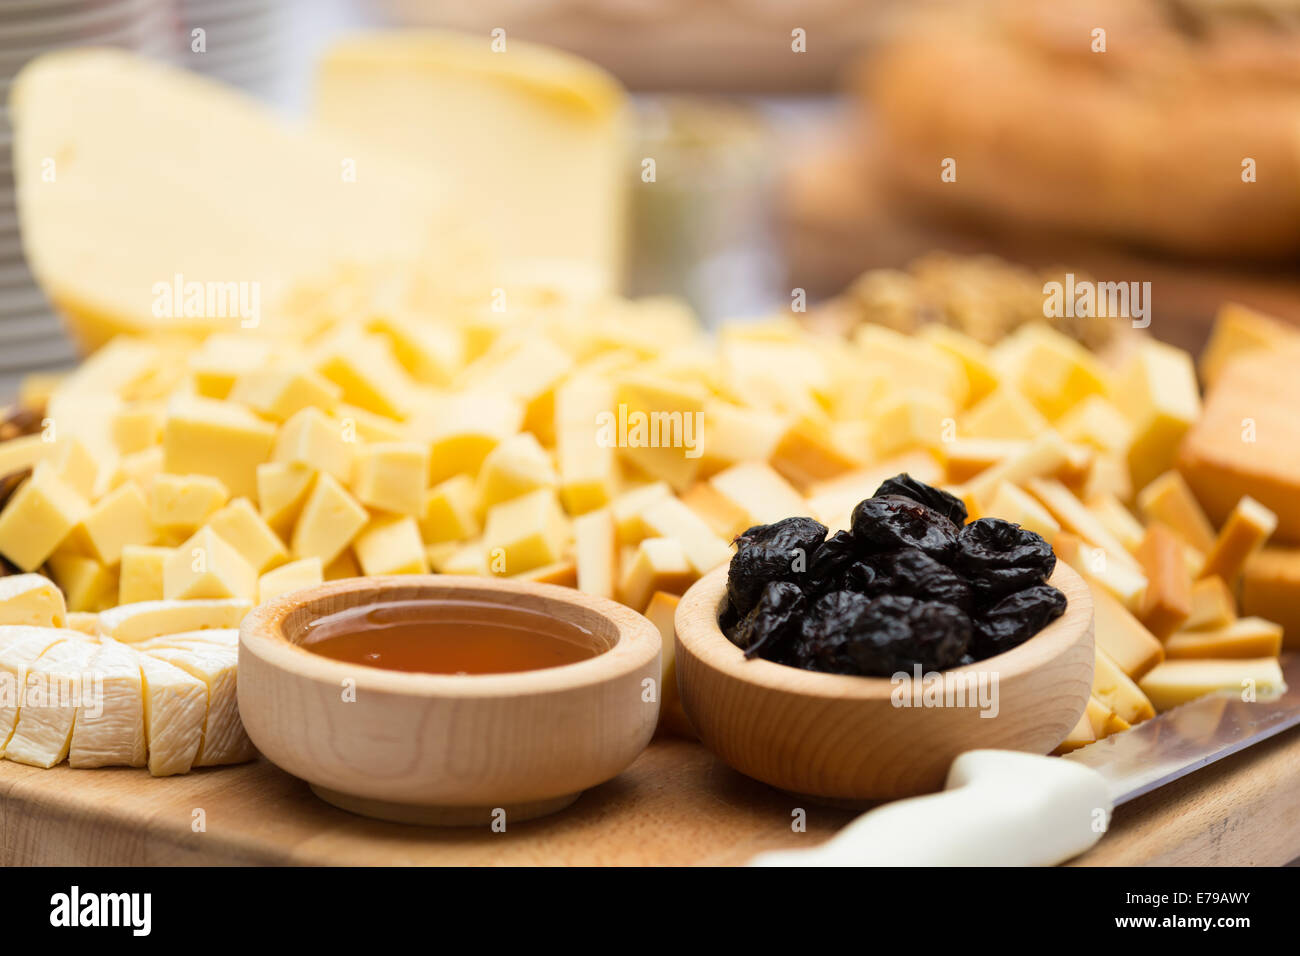 Assiette de fromage avec des fruits secs et du miel Banque D'Images